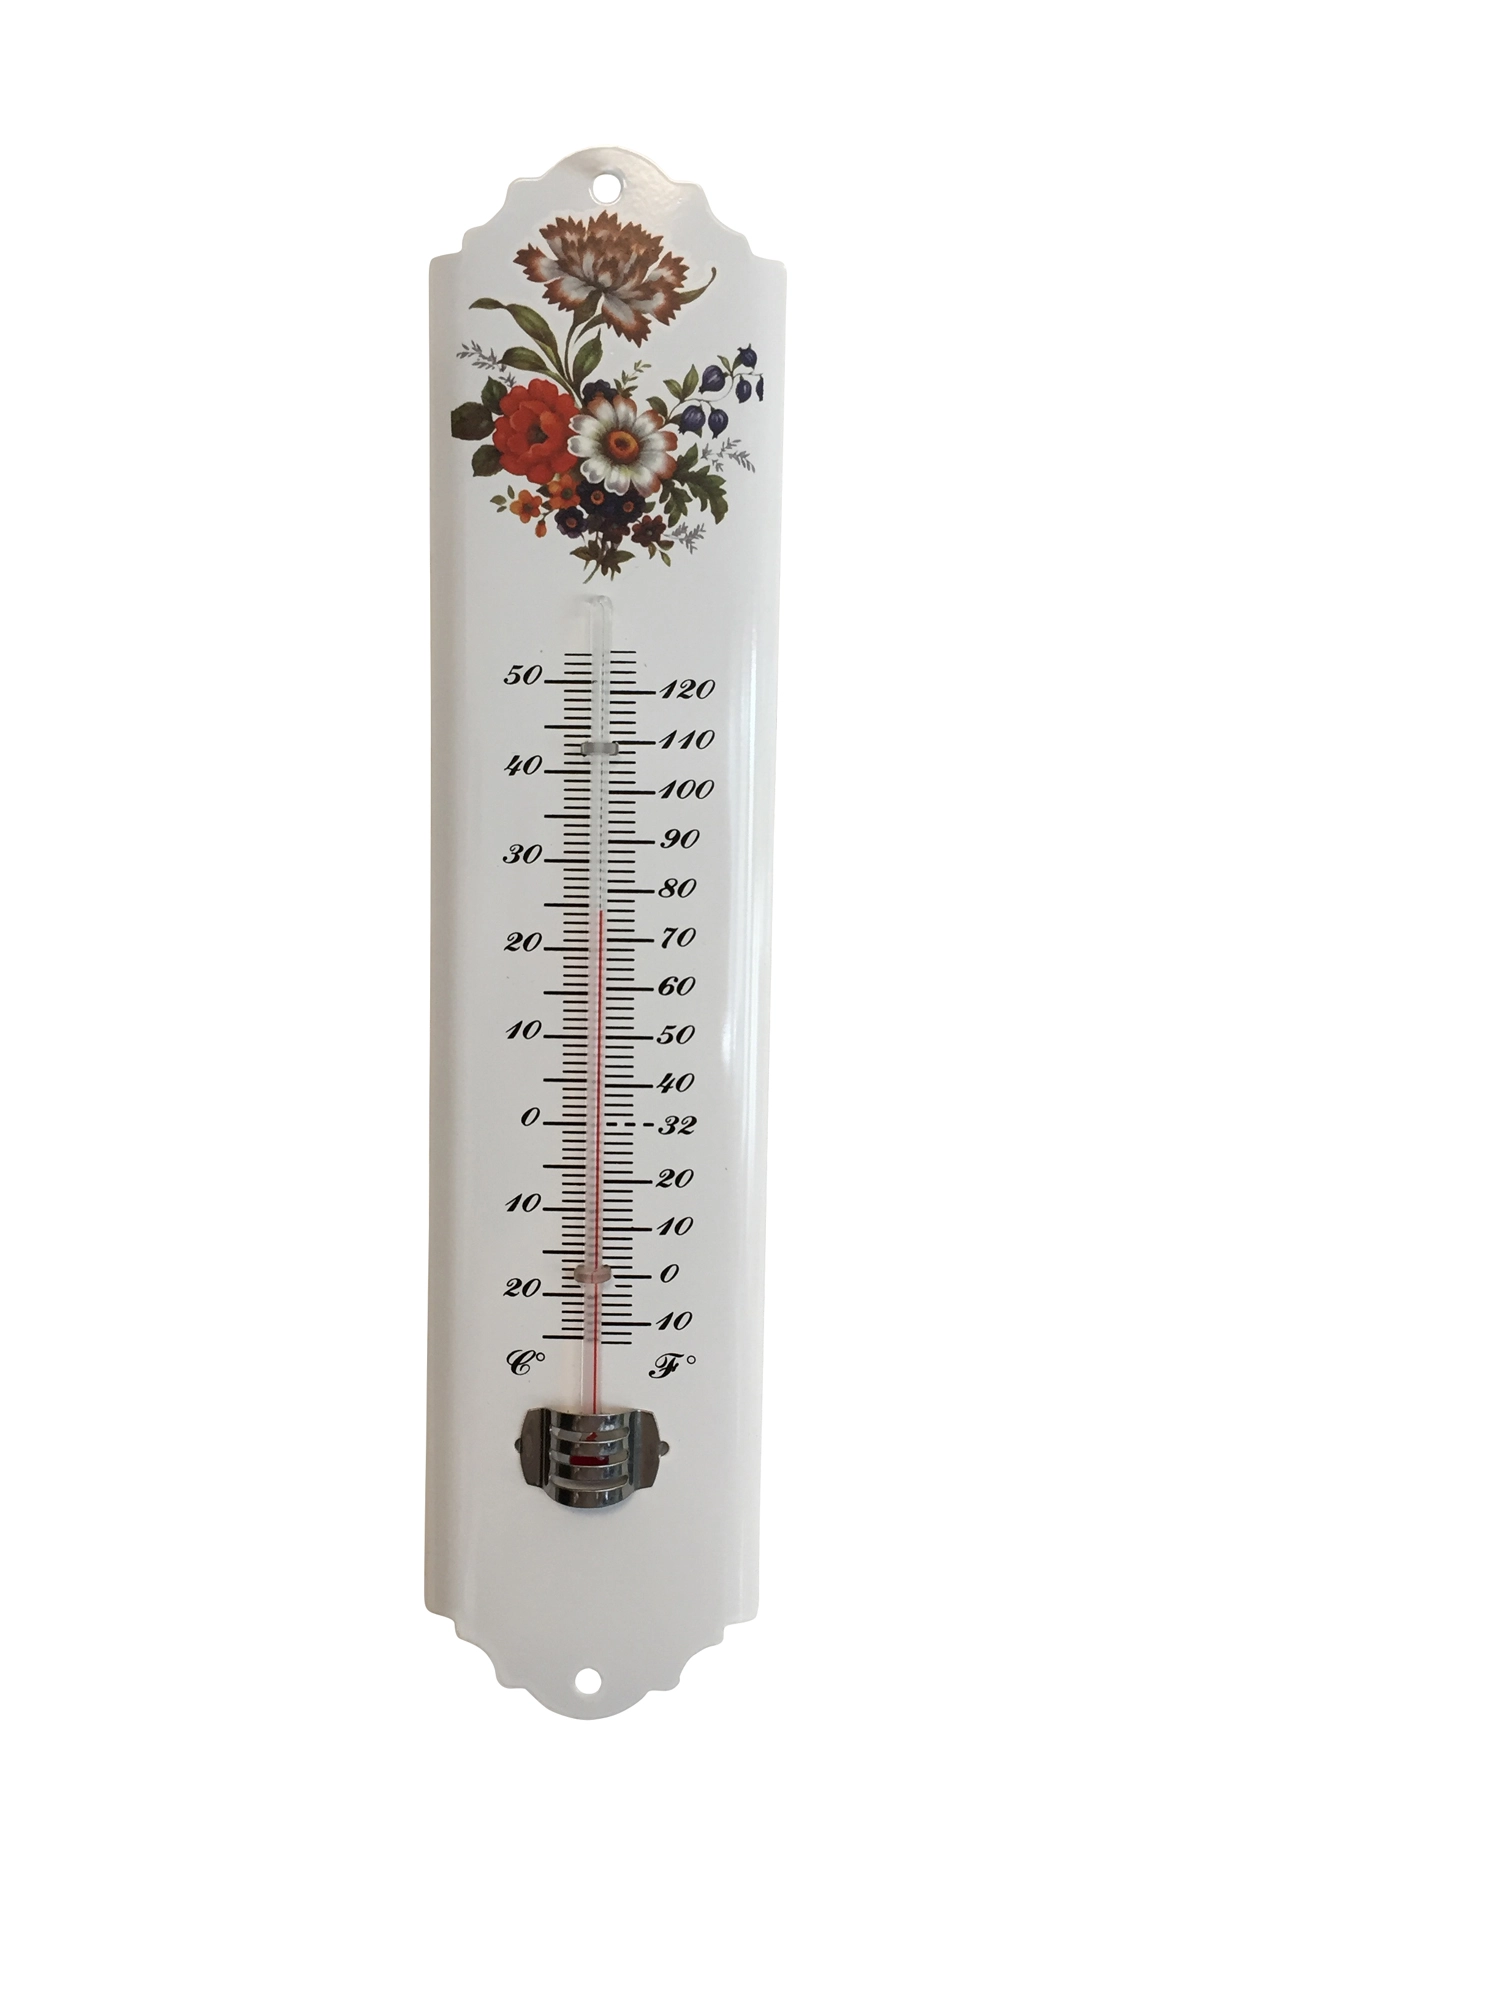 Termometro da esterno con gradi Celsius e Fahrenheit gradi sulla